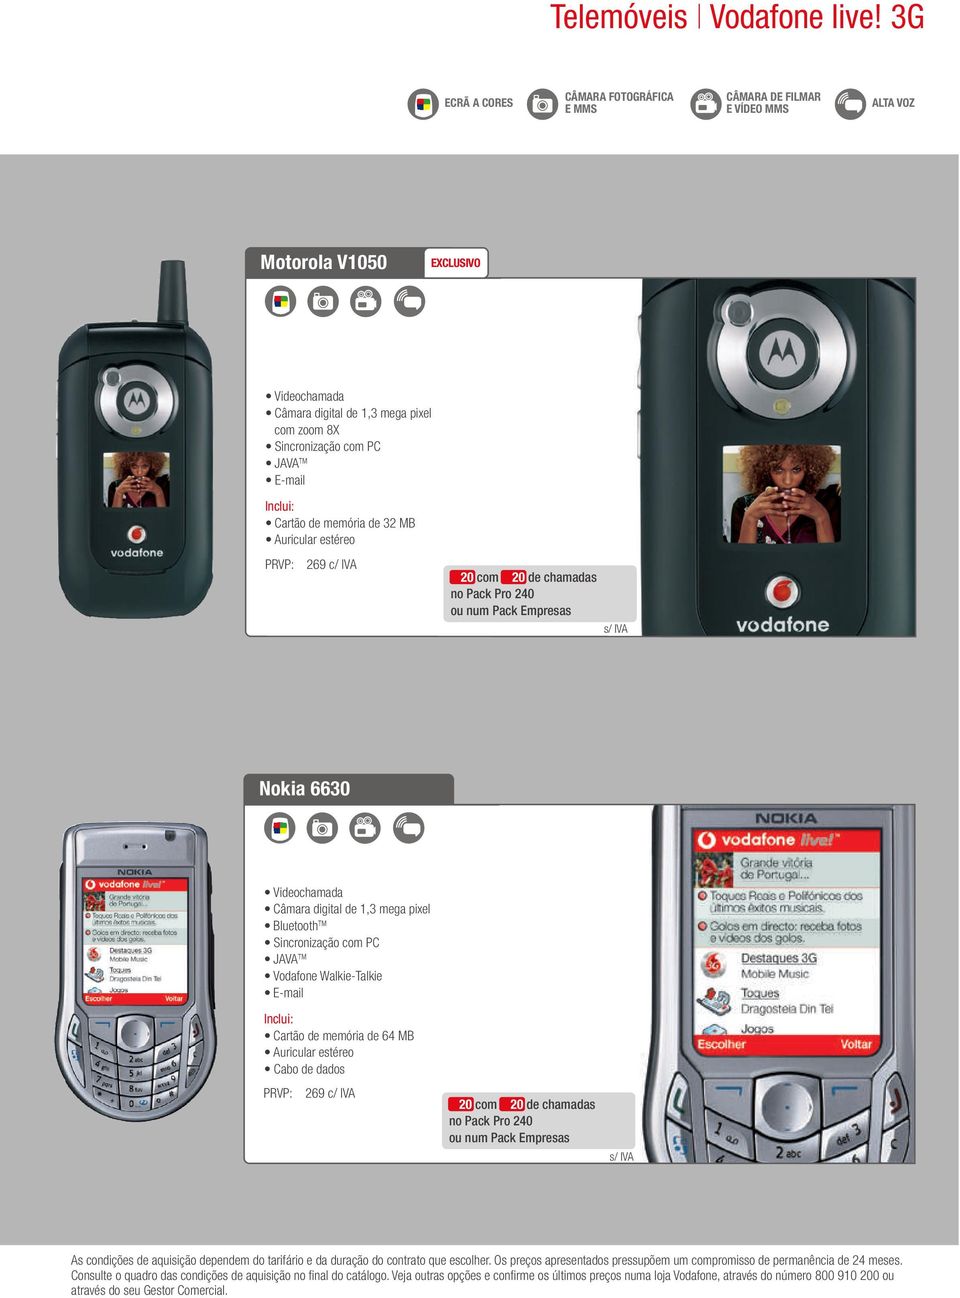 Inclui: Cartão de memória de 32 MB Auricular estéreo PRVP: 269 c/ IVA 20 com 20 de chamadas no Pack Pro 240 ou num Pack Empresas s/ IVA Nokia 6630 Videochamada Câmara digital de 1,3 mega pixel